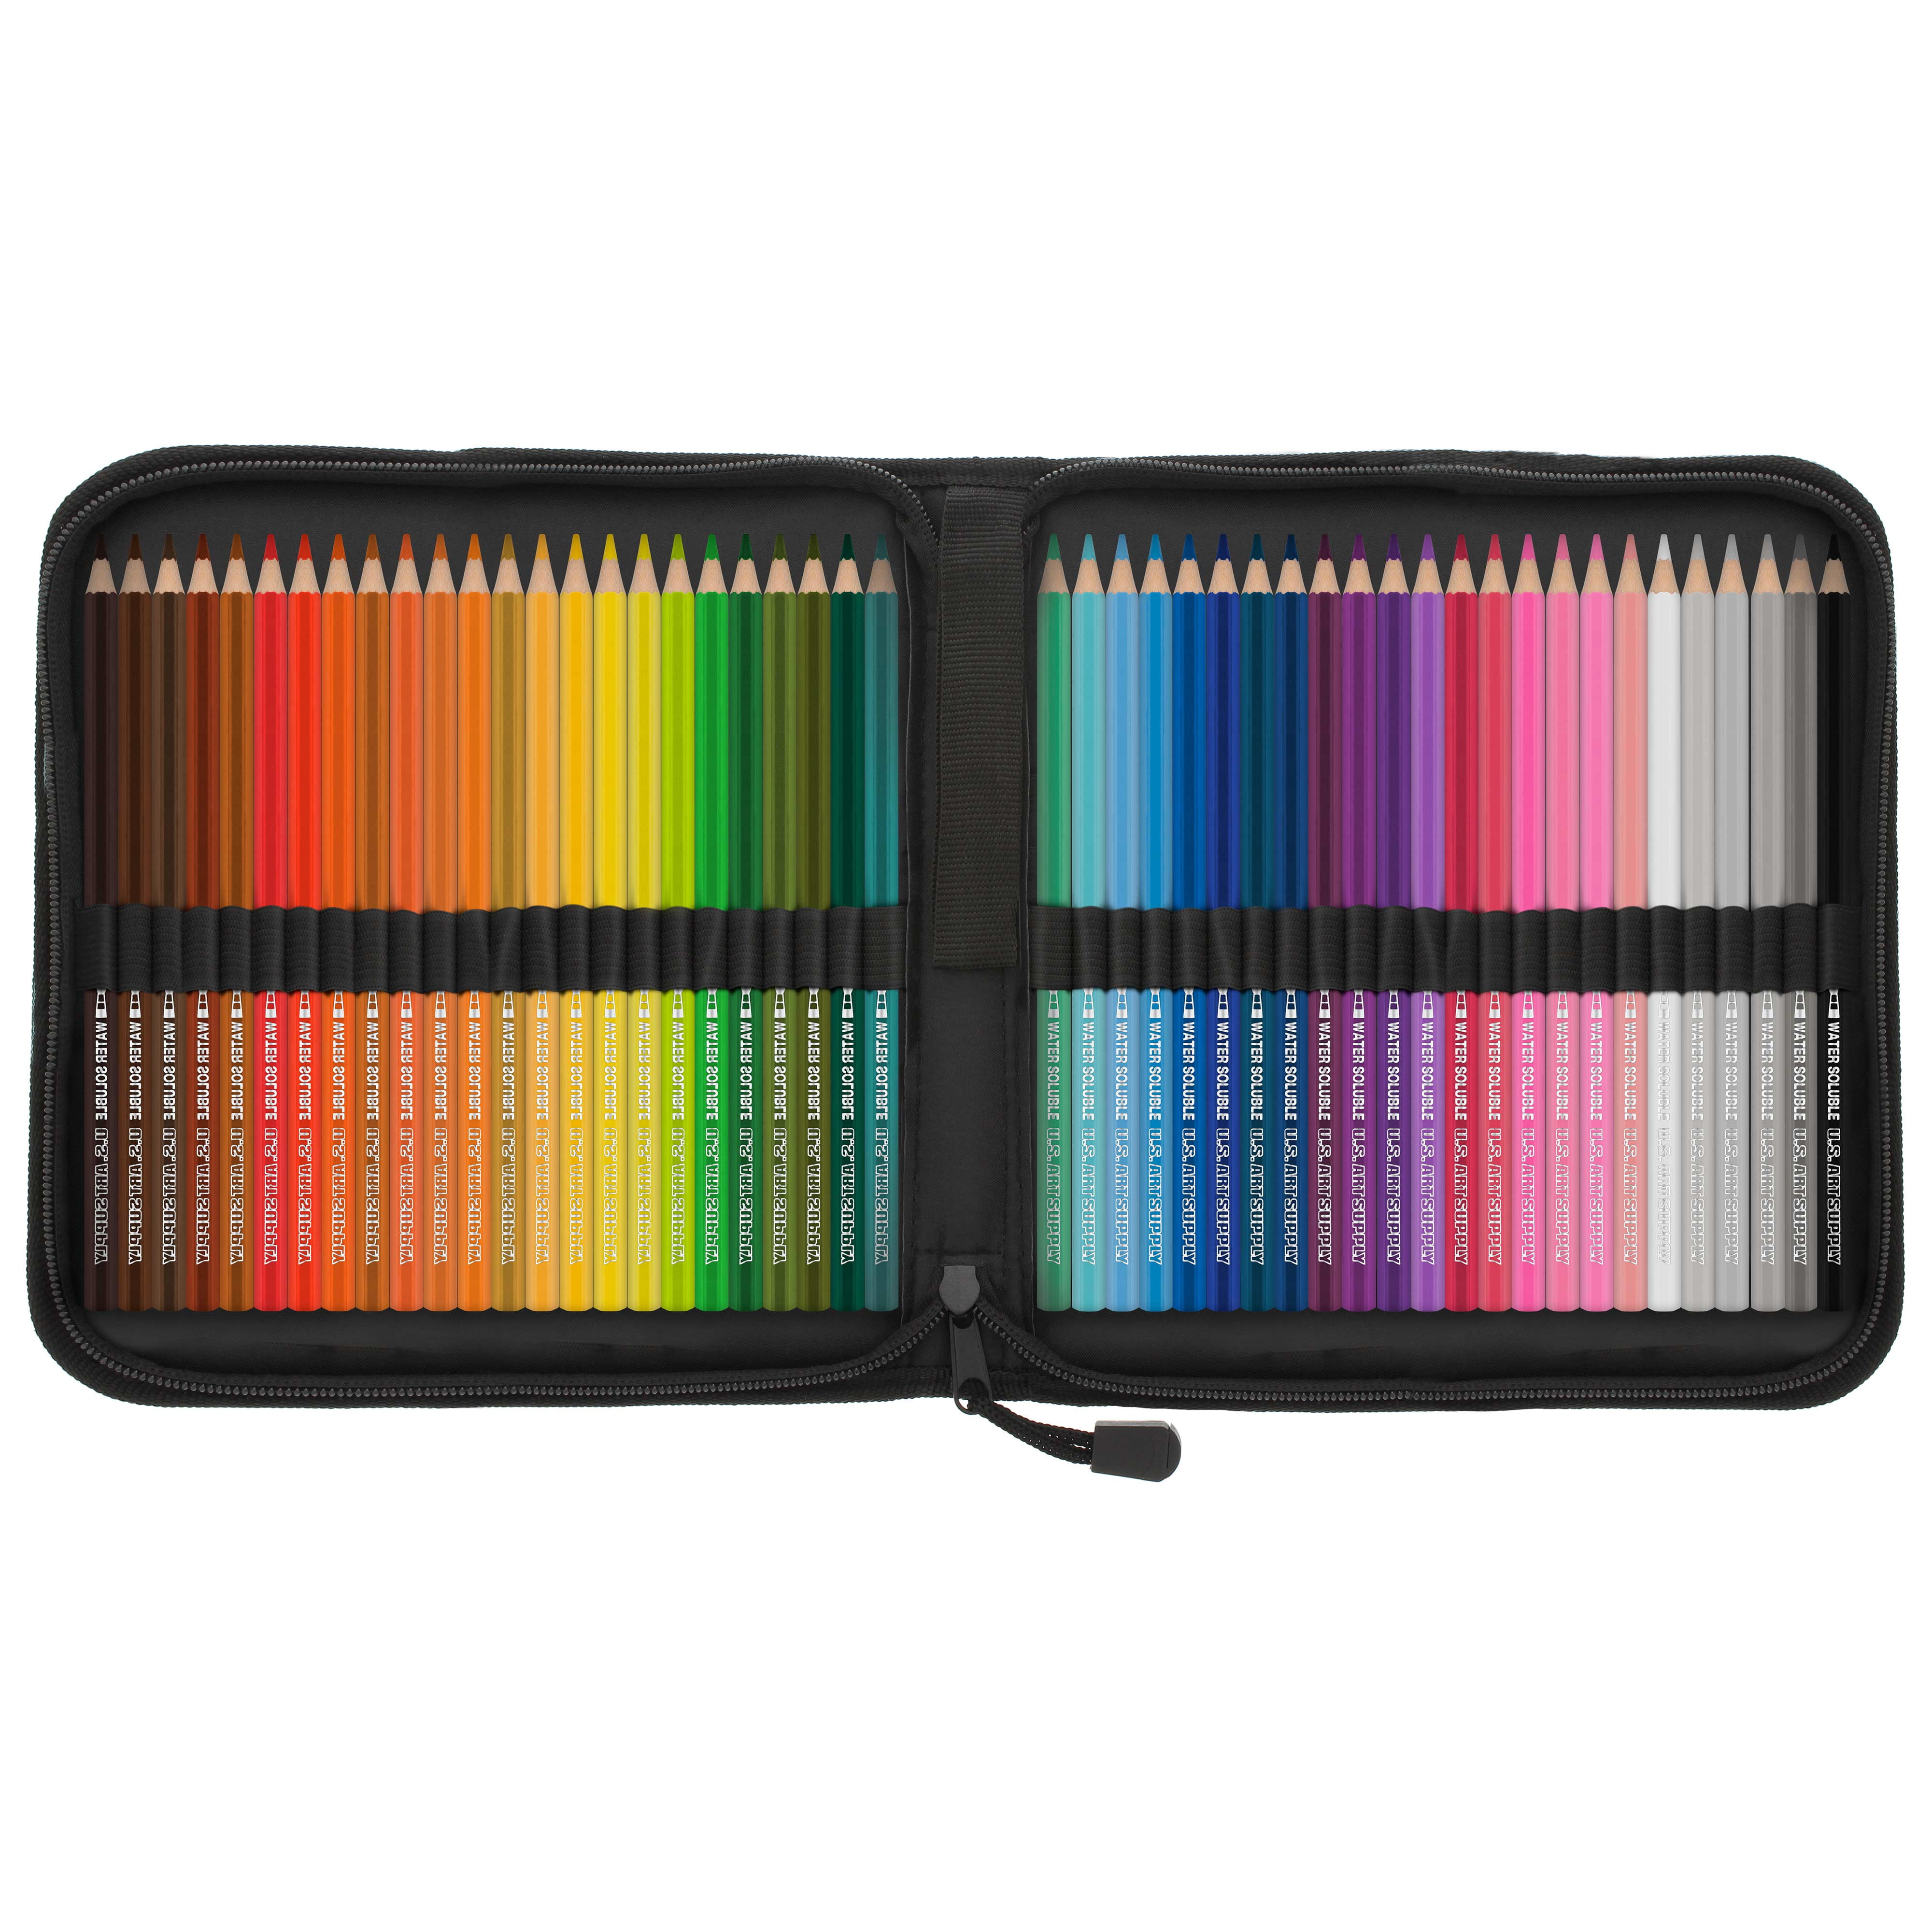 Crayola Colored Pencils, 100 Count 